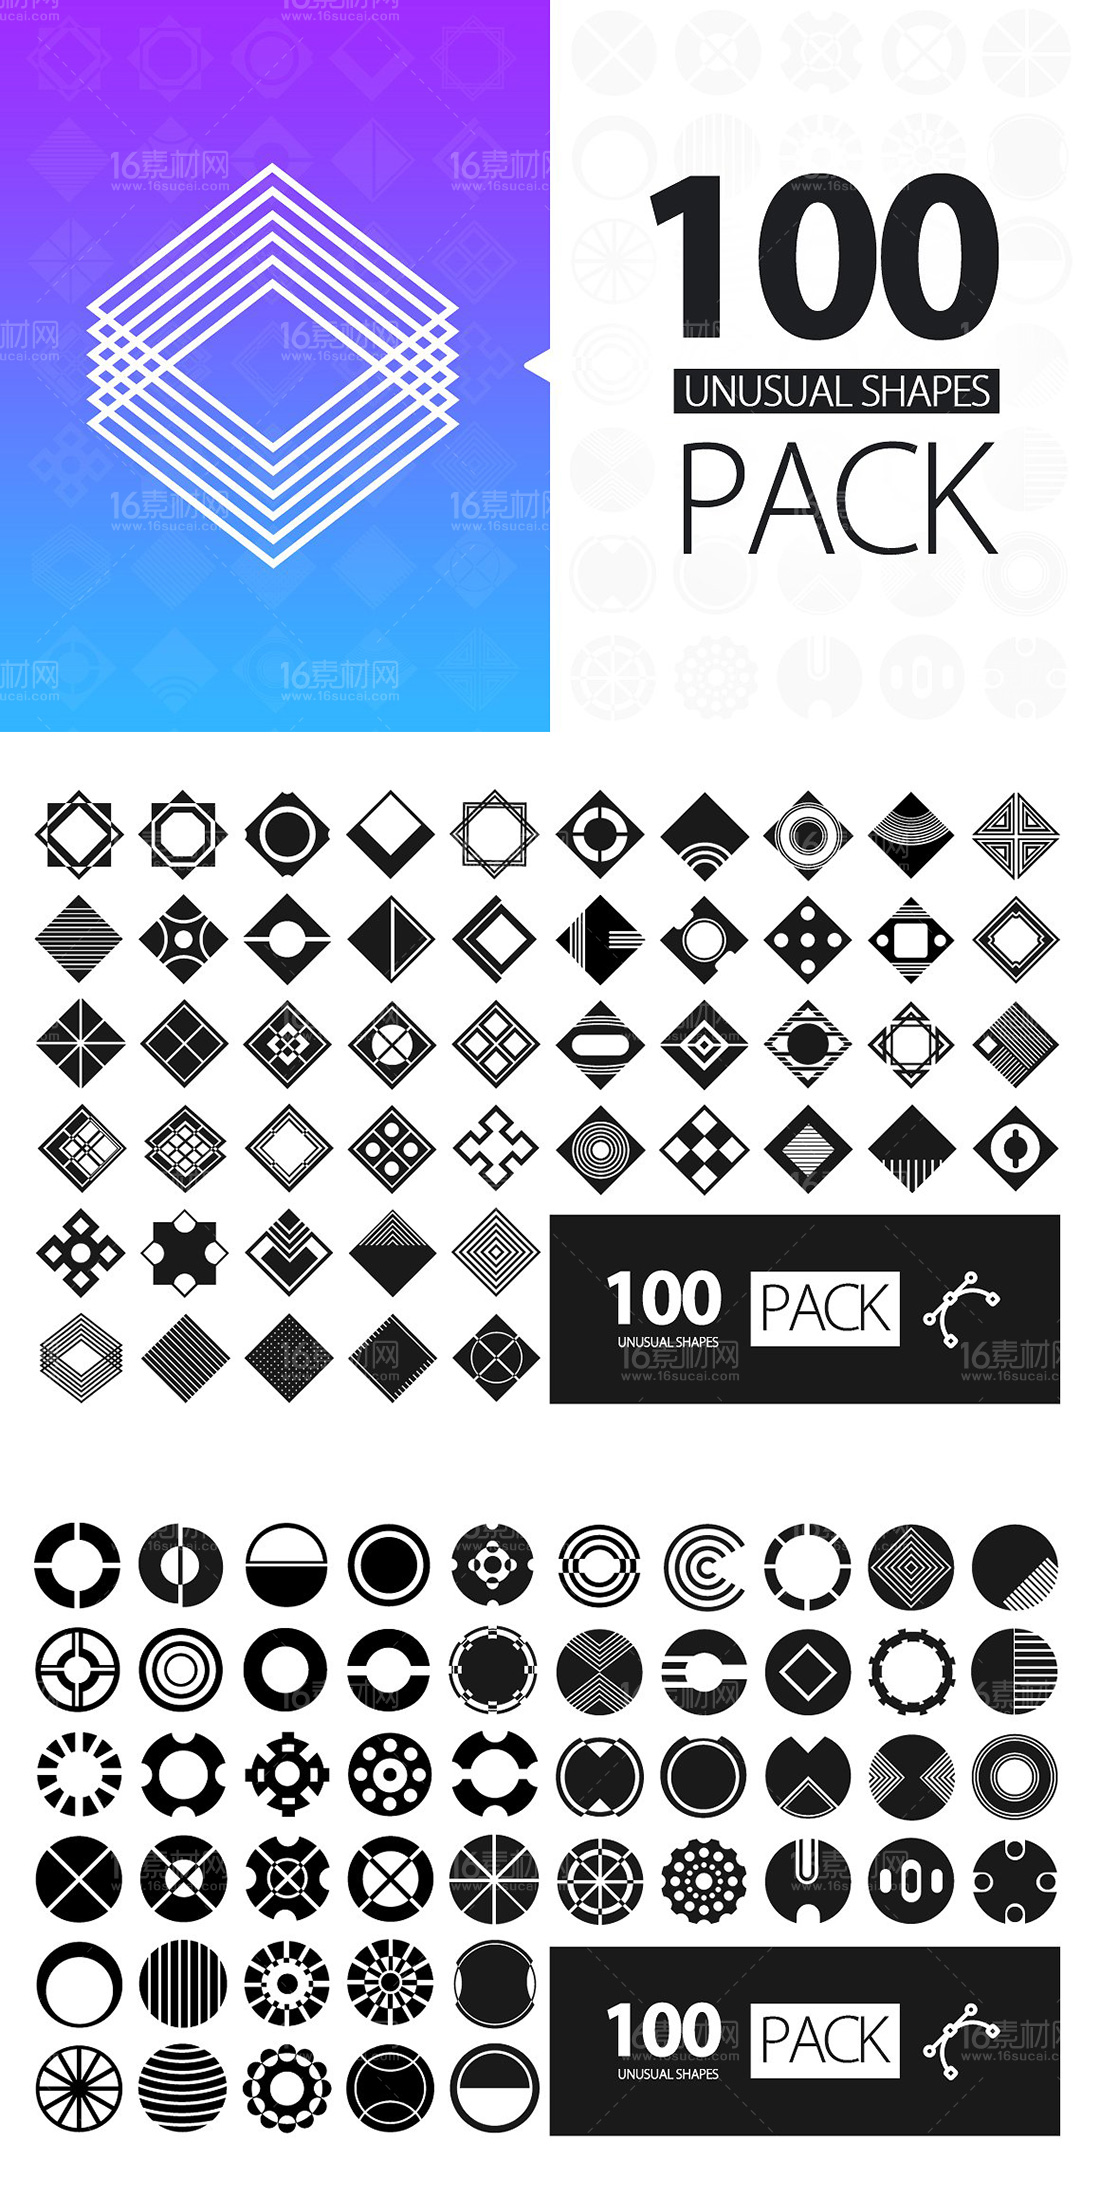 100-unusual-shapes-pack-.jpg